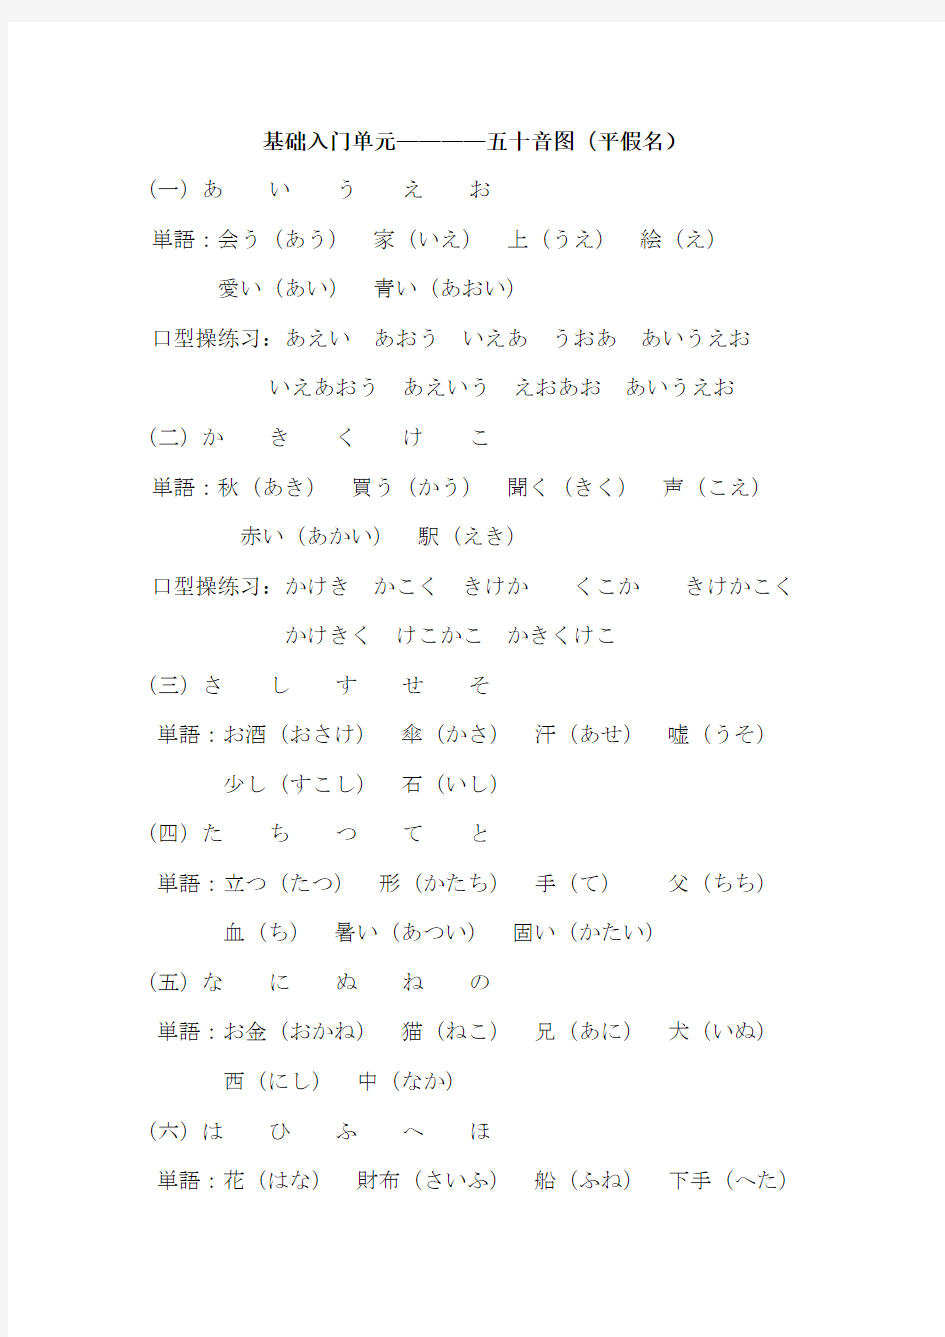 新编标准日本语上册学习笔记汇总整理